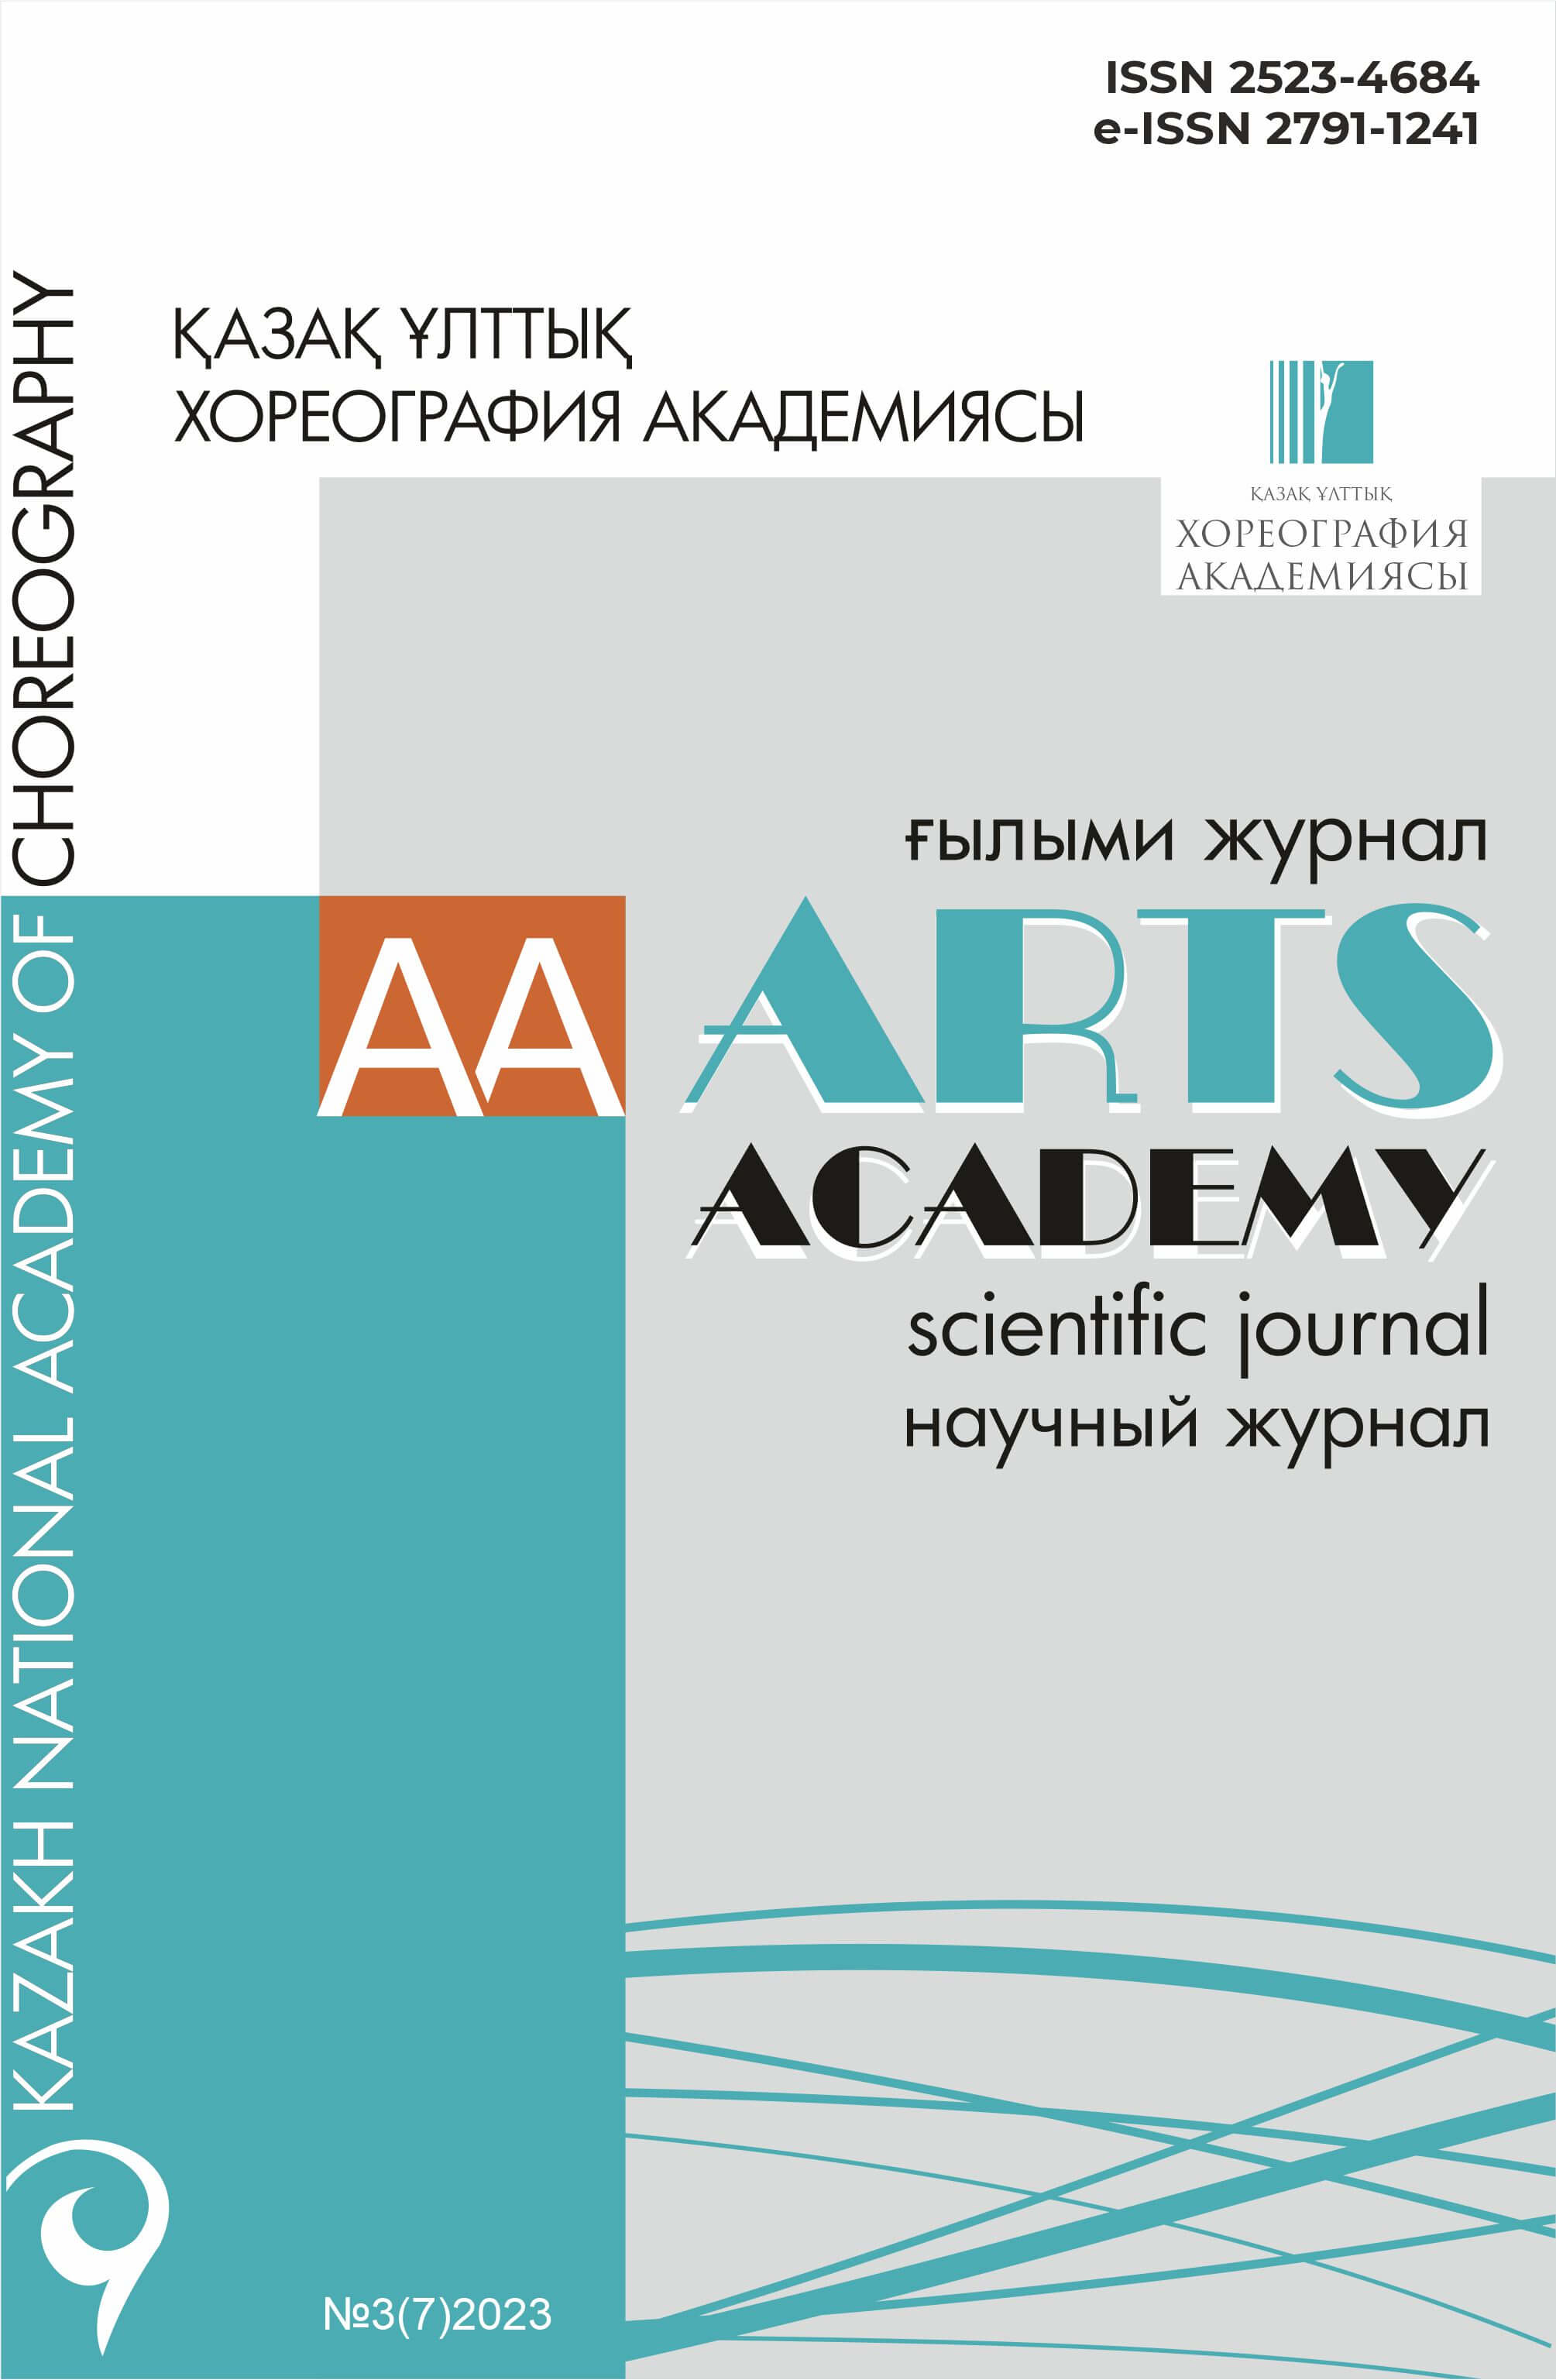 Научный журнал «ARTS ACADEMY» №3(7)2023